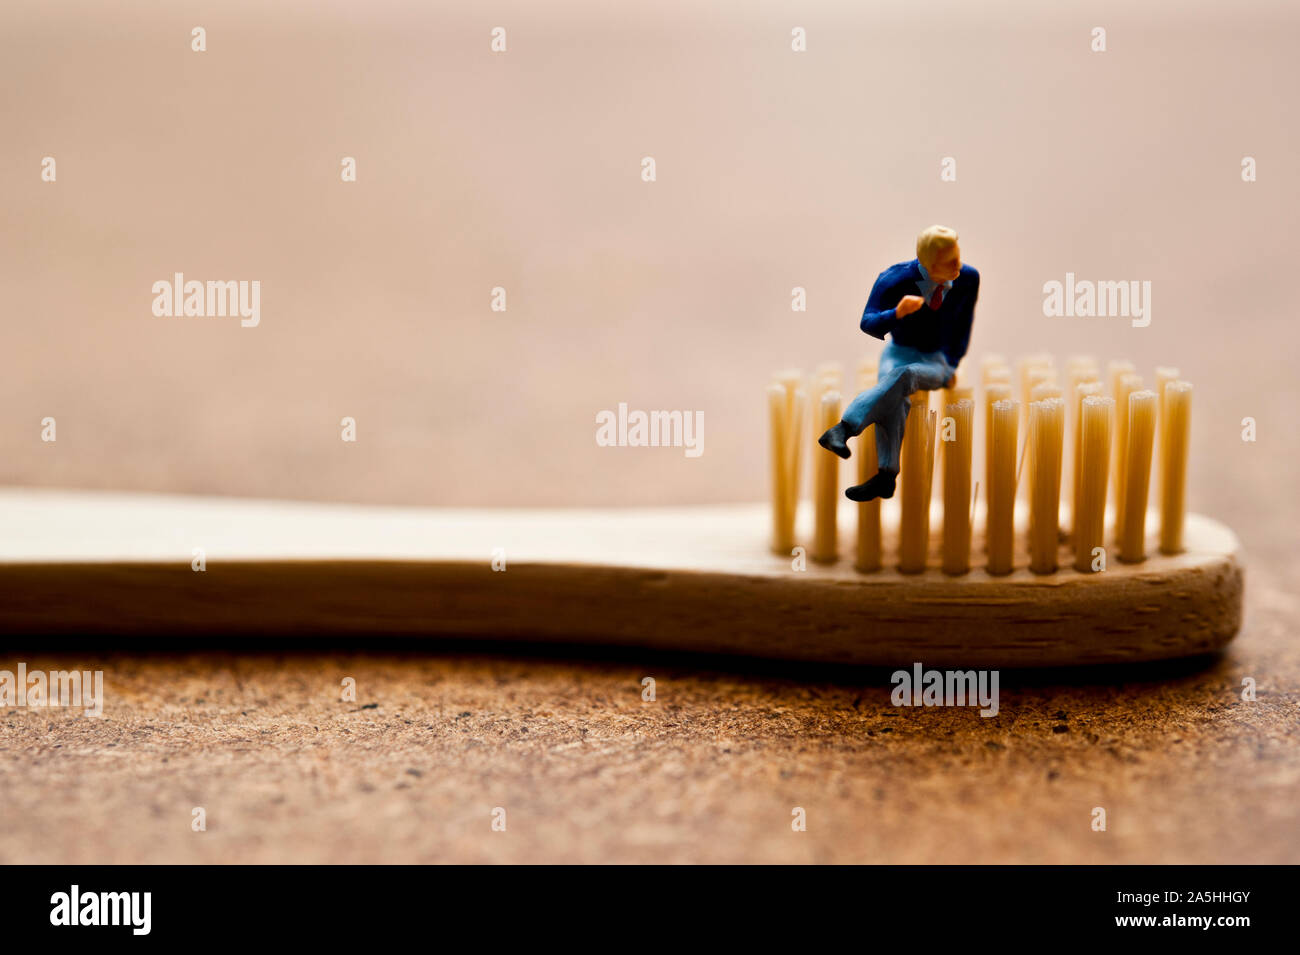 Figurillas en miniatura sentado en un cepillo de dientes de bambú - concepto de consumidor consciente ecológico Foto de stock